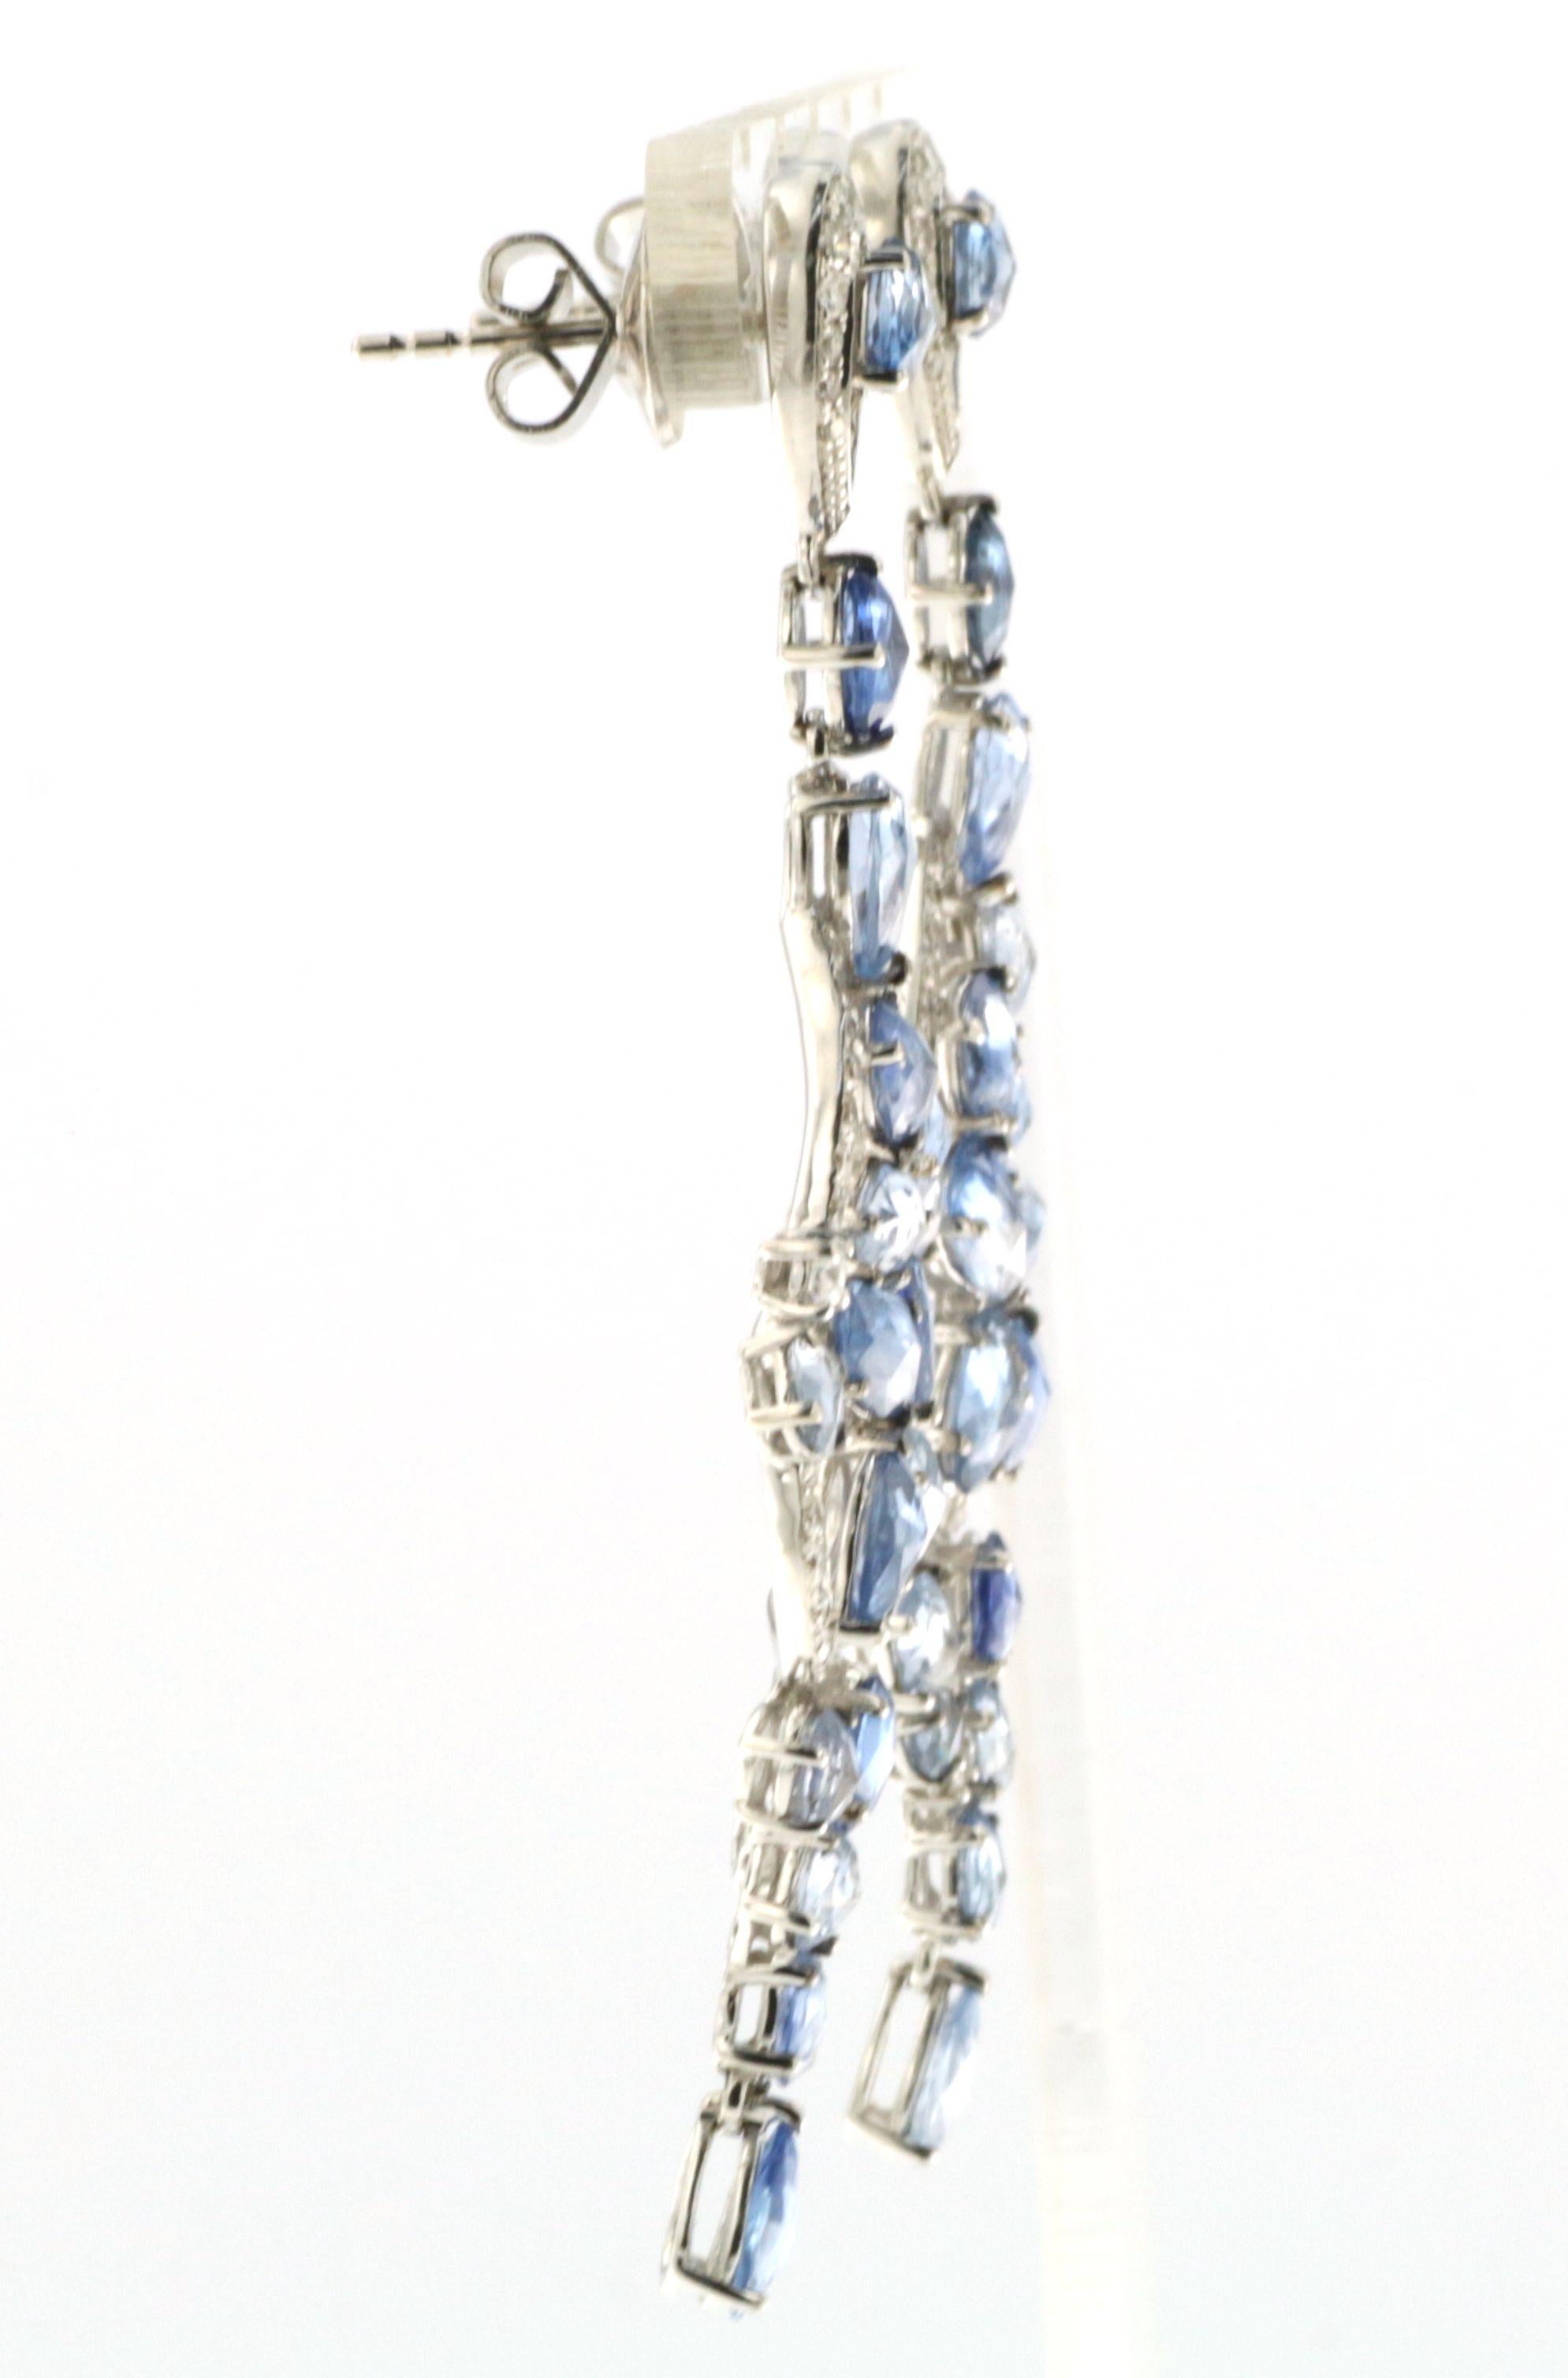 Unsere blauen Saphir- und Diamant-Ohrringe im Vintage-Stil sind ein atemberaubendes und einzigartiges Schmuckstück, das in jeder Umgebung einen Blickfang darstellt. Diese Ohrringe bestehen aus zwei atemberaubenden blauen Saphiren im Rosenschliff von